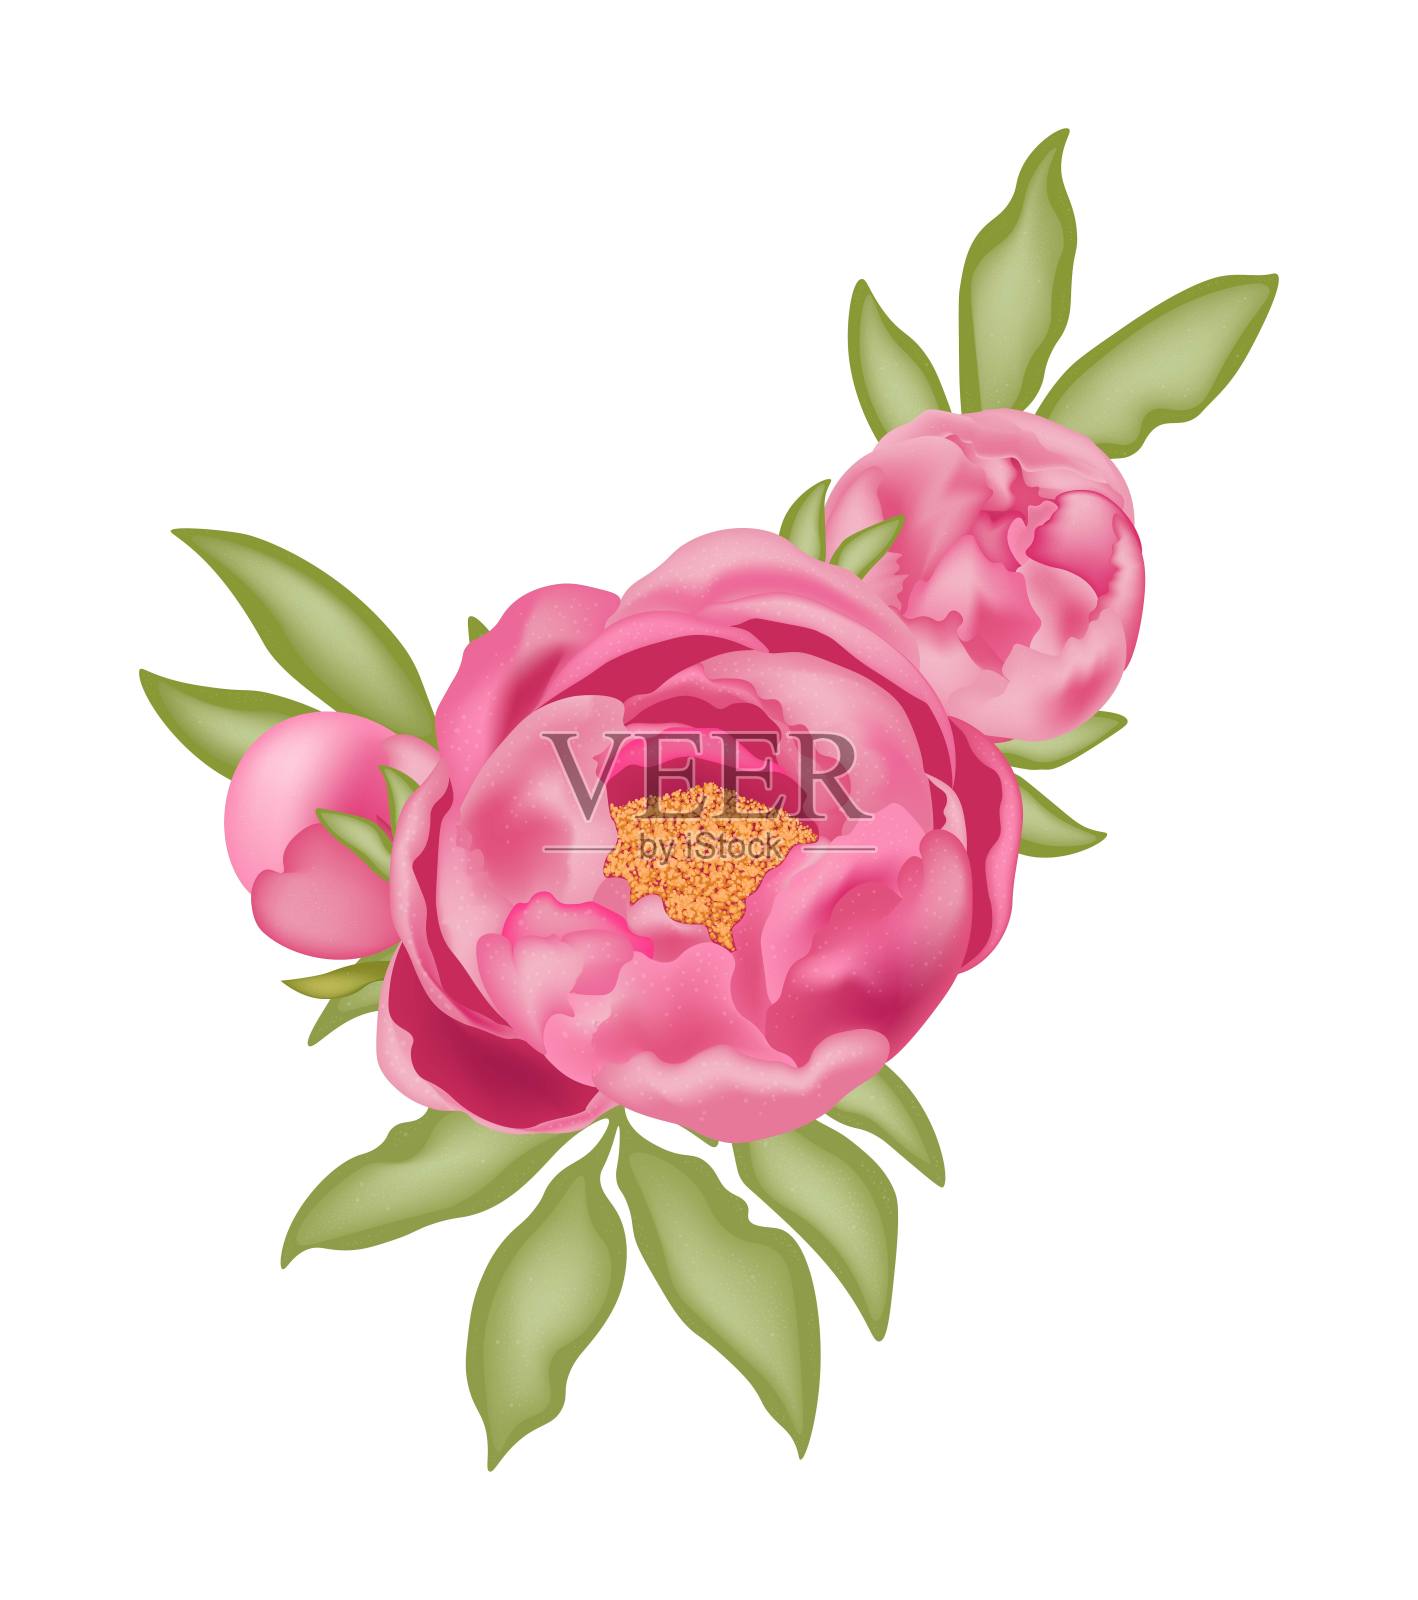 粉红色牡丹，叶和芽都是绿色的，白色背景，带有3D效果，矢量图。设计元素图片